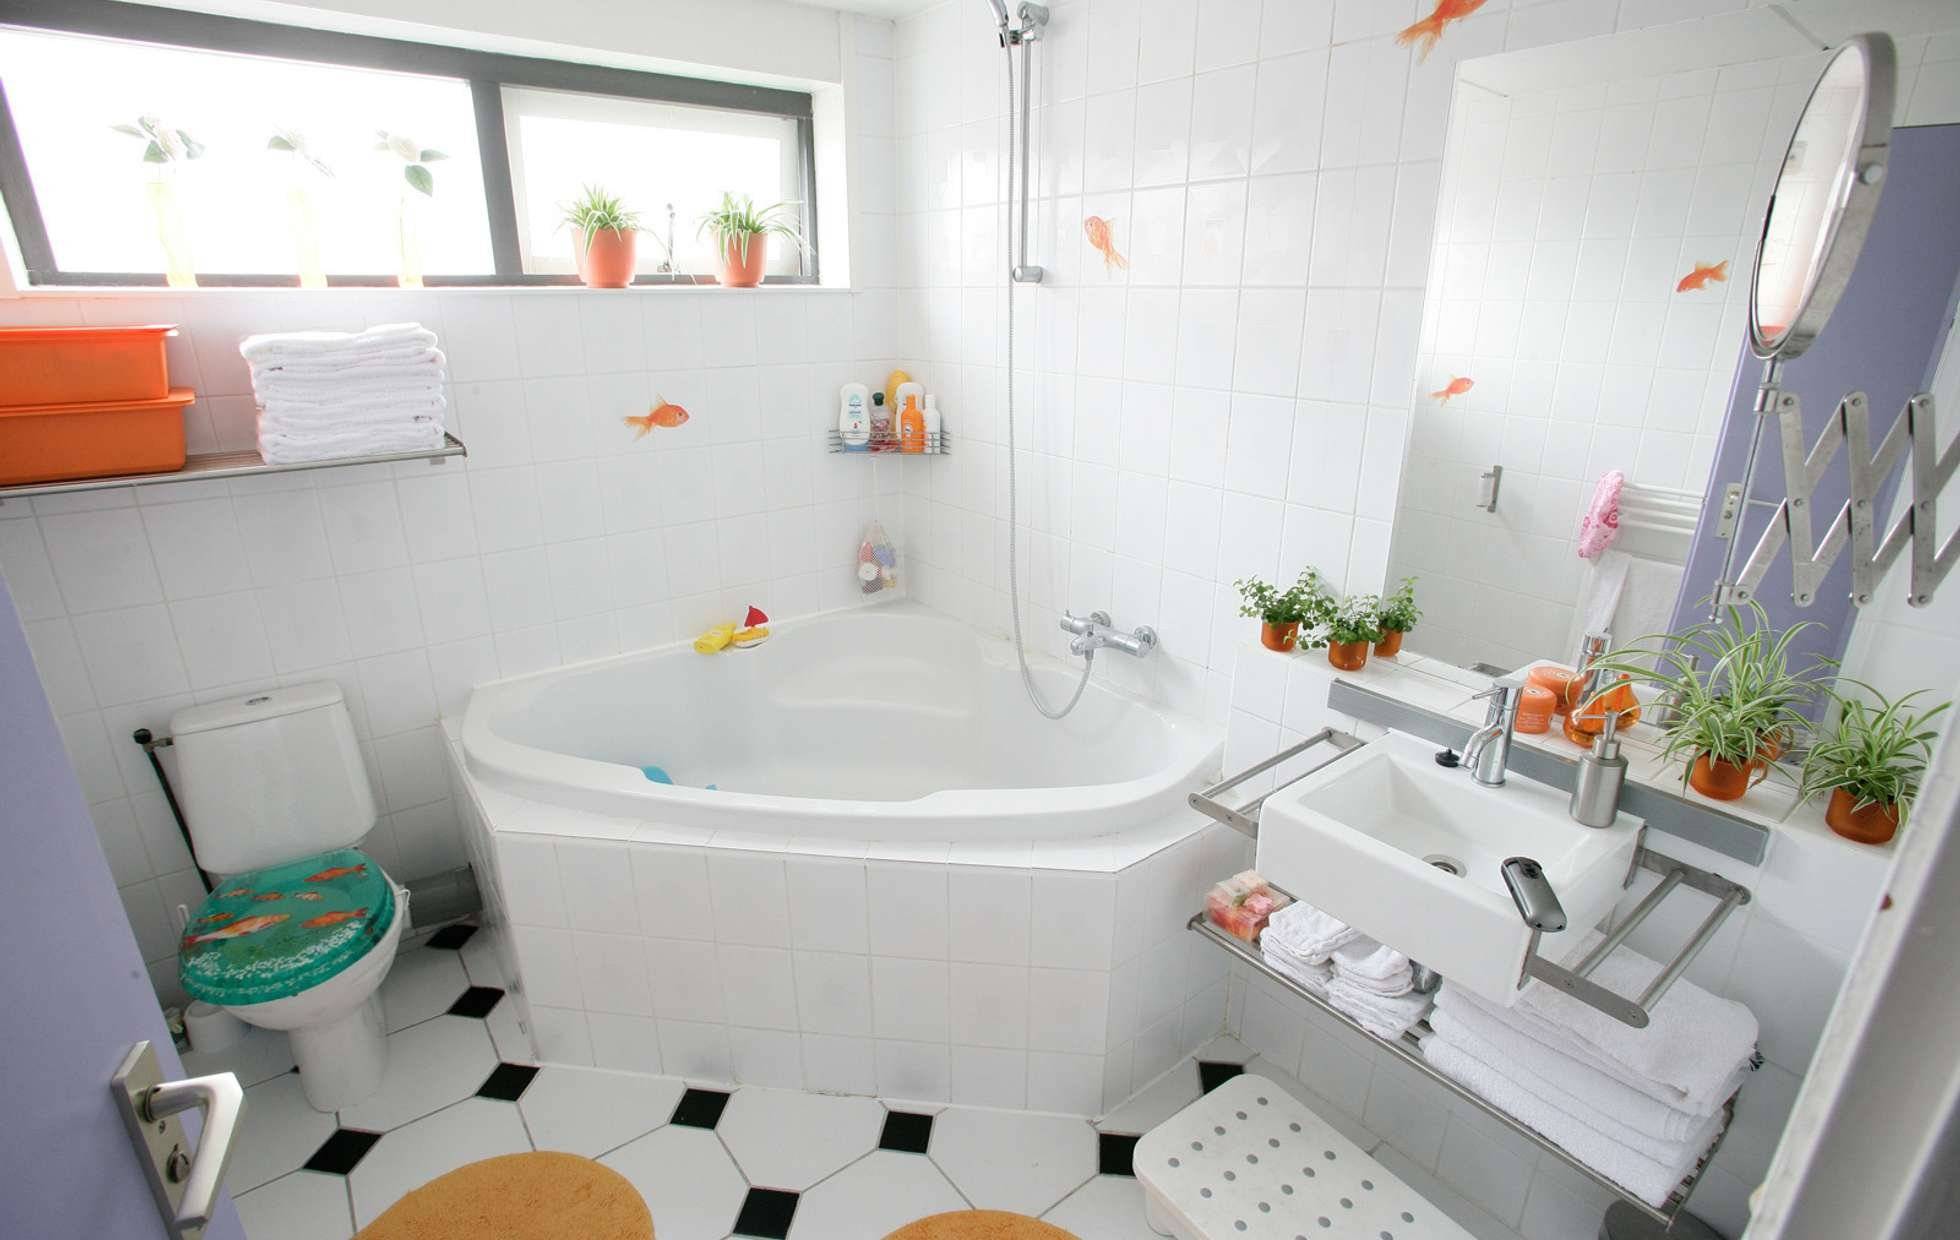 Декор ванной своими руками: пошаговый мастер-класс, фото красивых примеров дизайна и оформления для начинающих